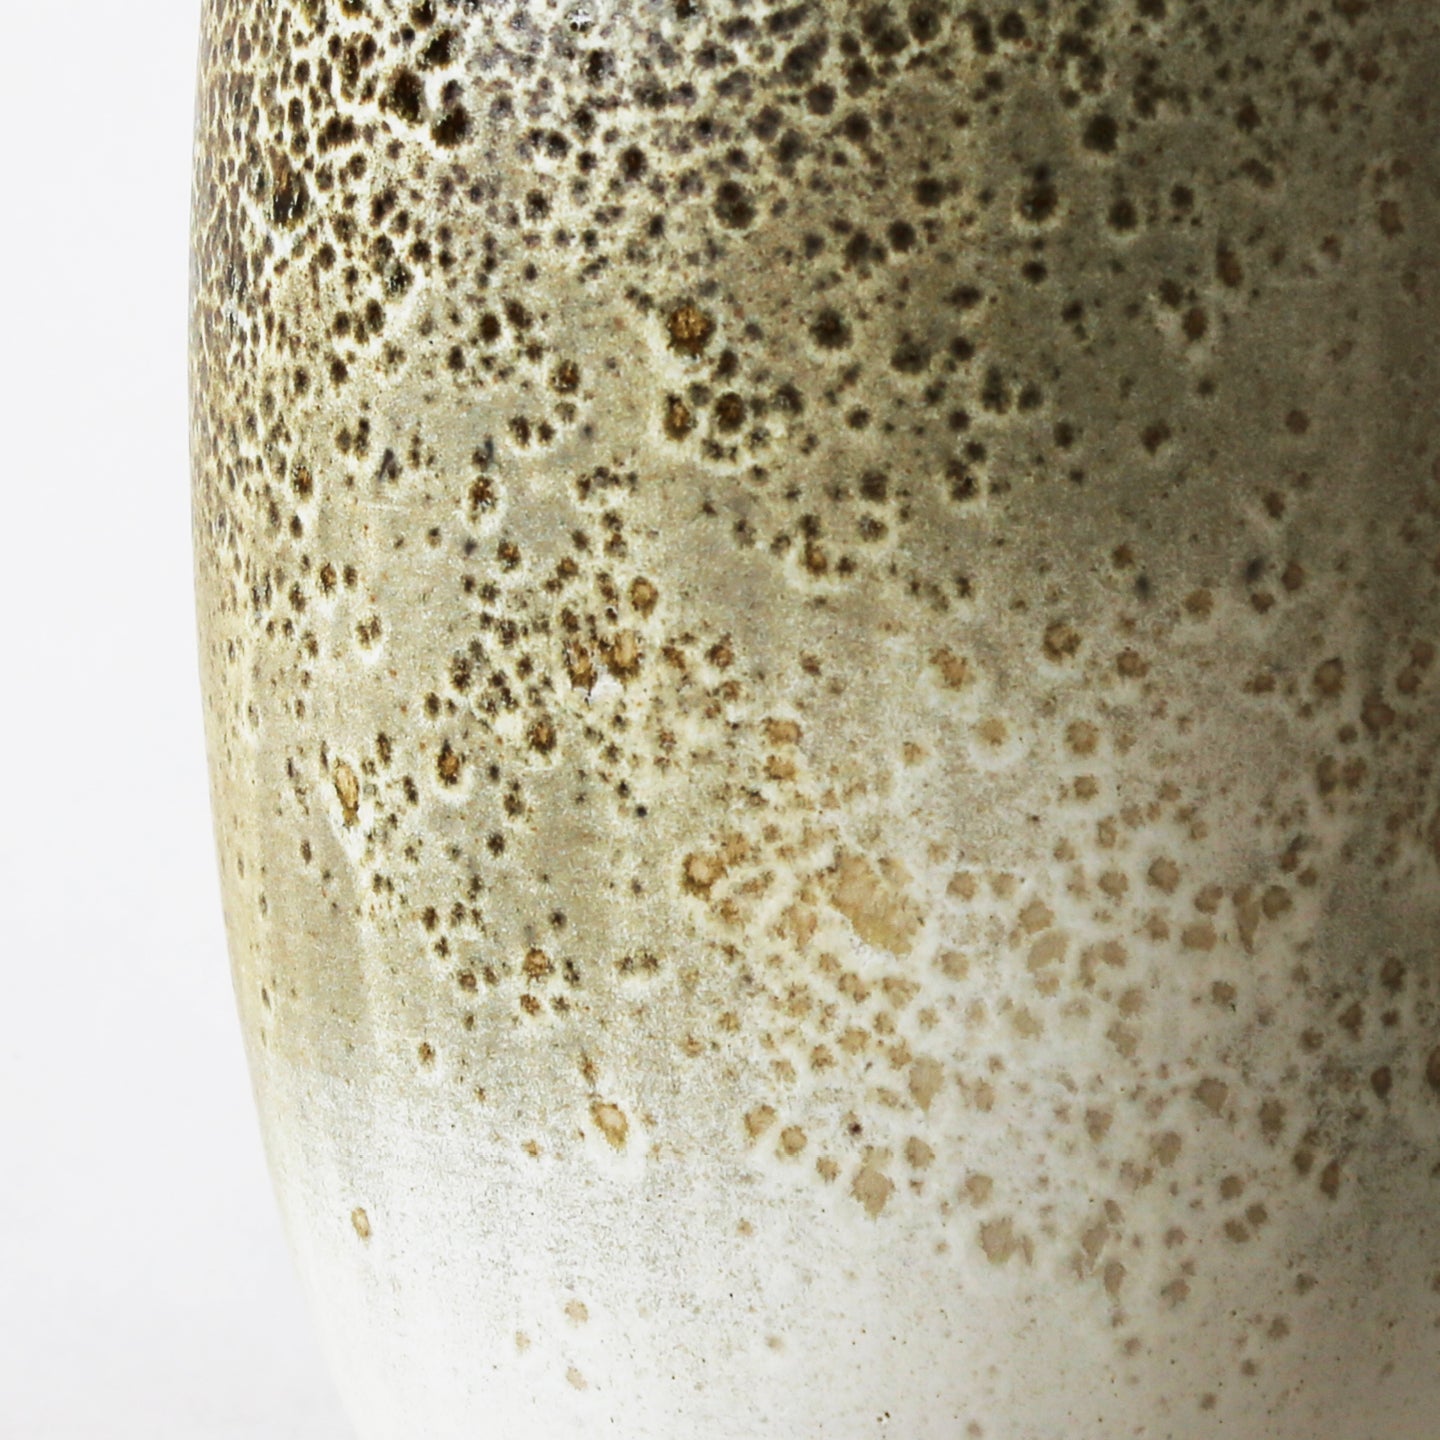 KH Wurtz One-of-a-Kind Vase No. 02, 2023